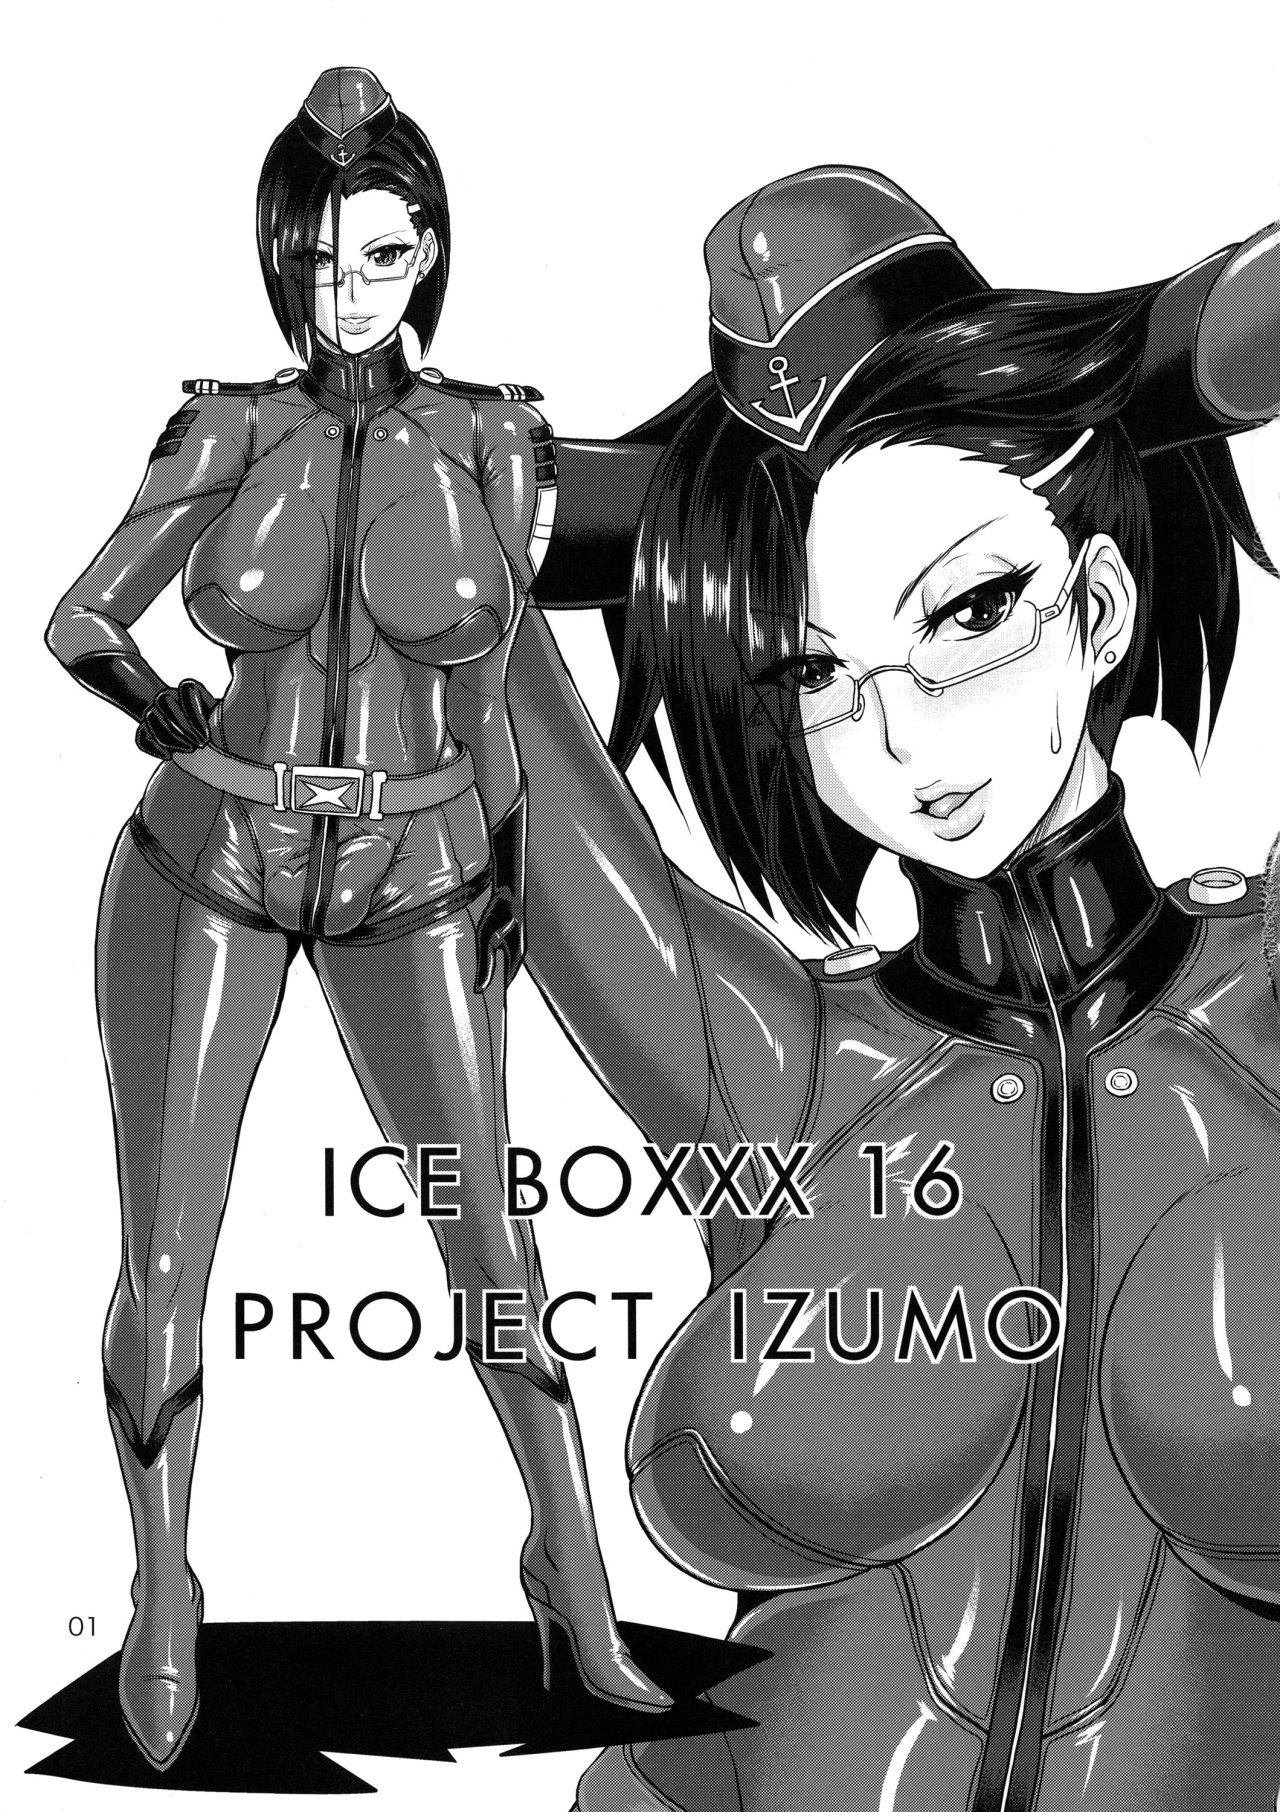 ICE BOXXX 16 IZUMO PROJECT (Space Battleship Yamato 2199) - 1